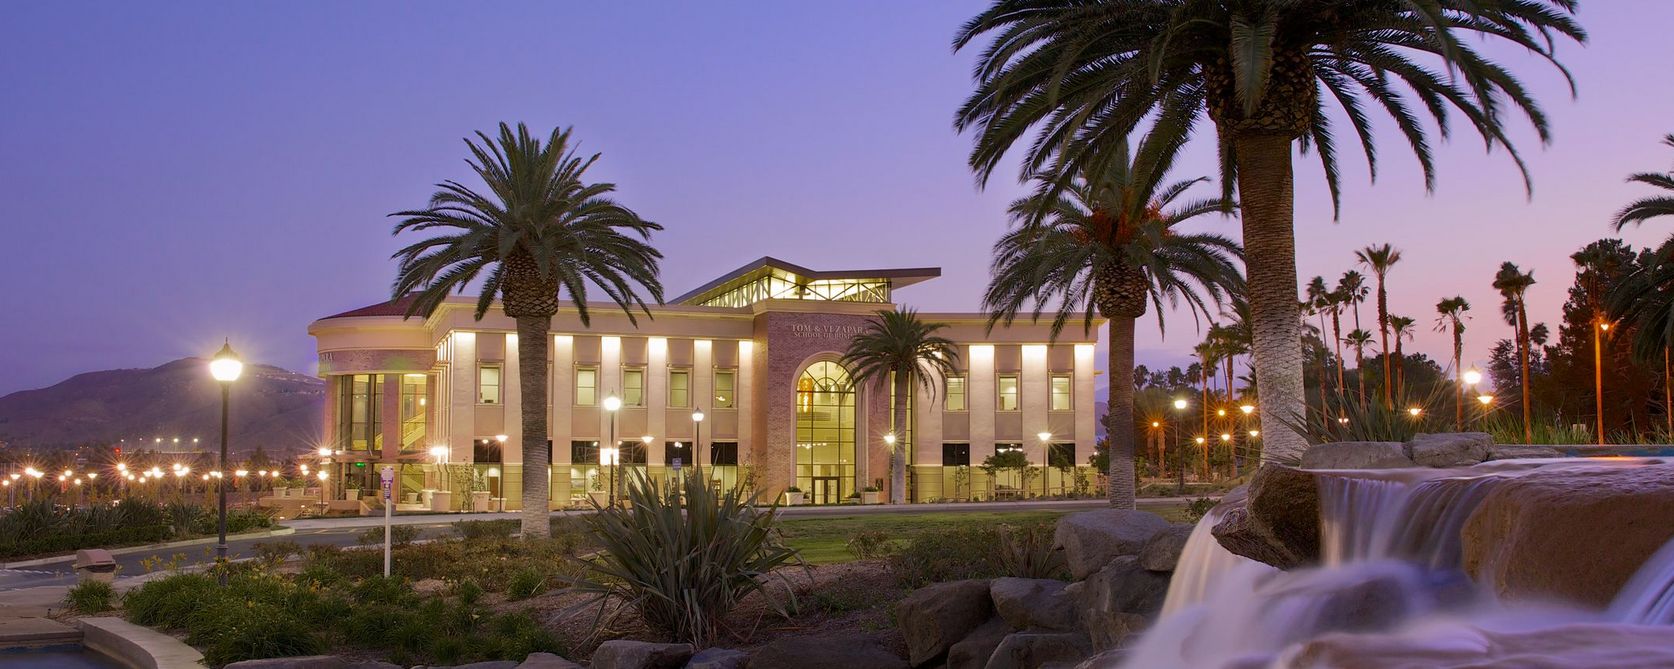 School of Business - La Sierra University